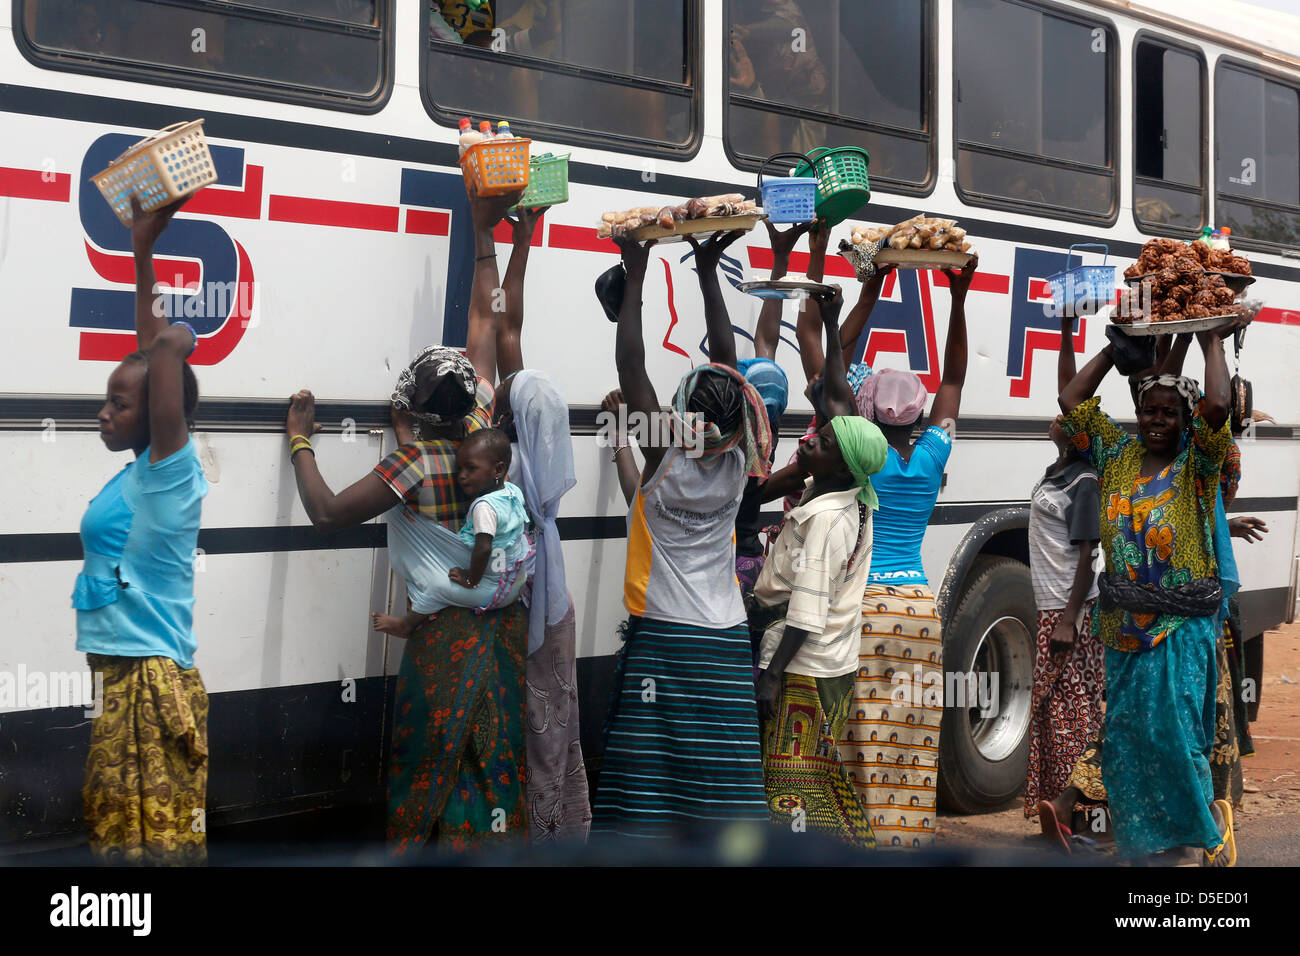 Les vendeurs de rue essaient de vendre des rafraîchissements et des fruits pour les passagers des autobus, le Burkina Faso, l'Afrique Banque D'Images